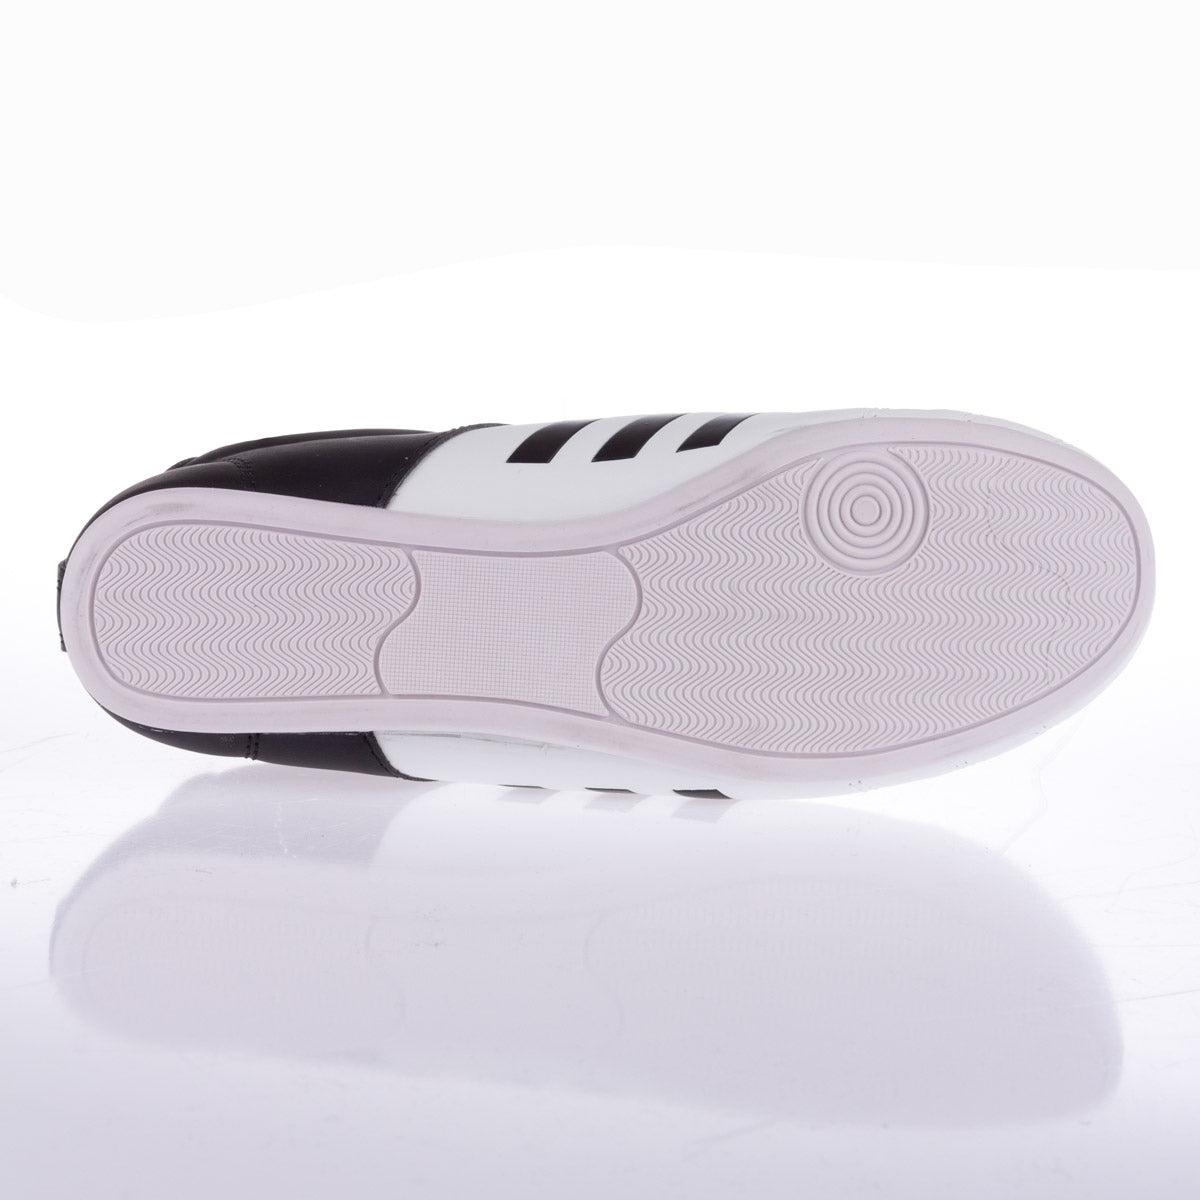 adidas Kinder Schuhe ADI-KICK II - weiß/schwarz, ADITKK01-kids